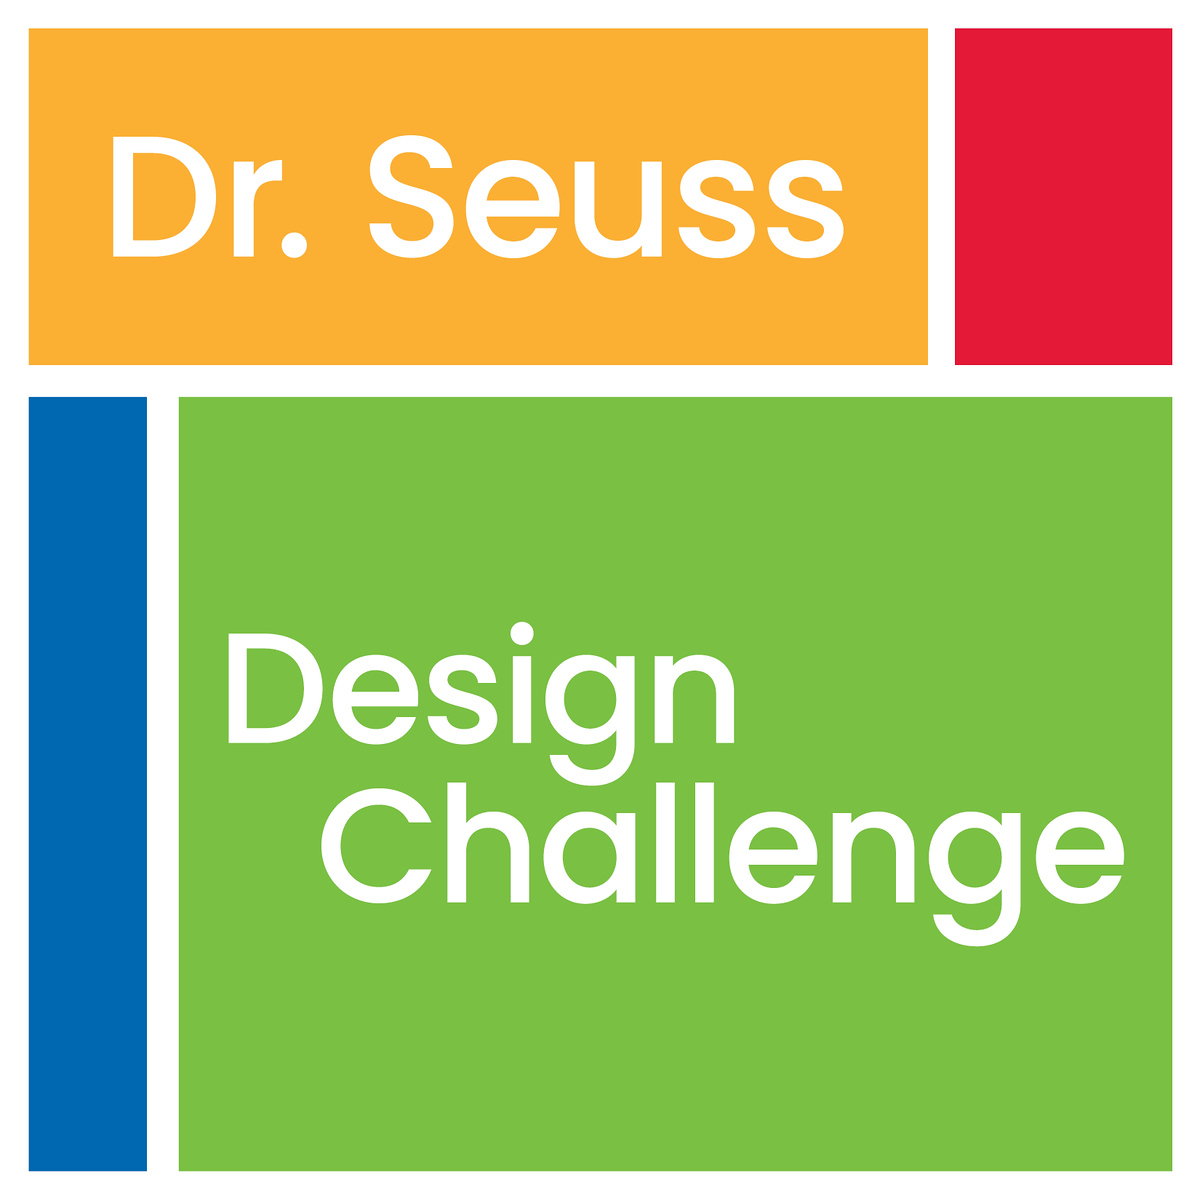 Dr. Seuss Design Challenge